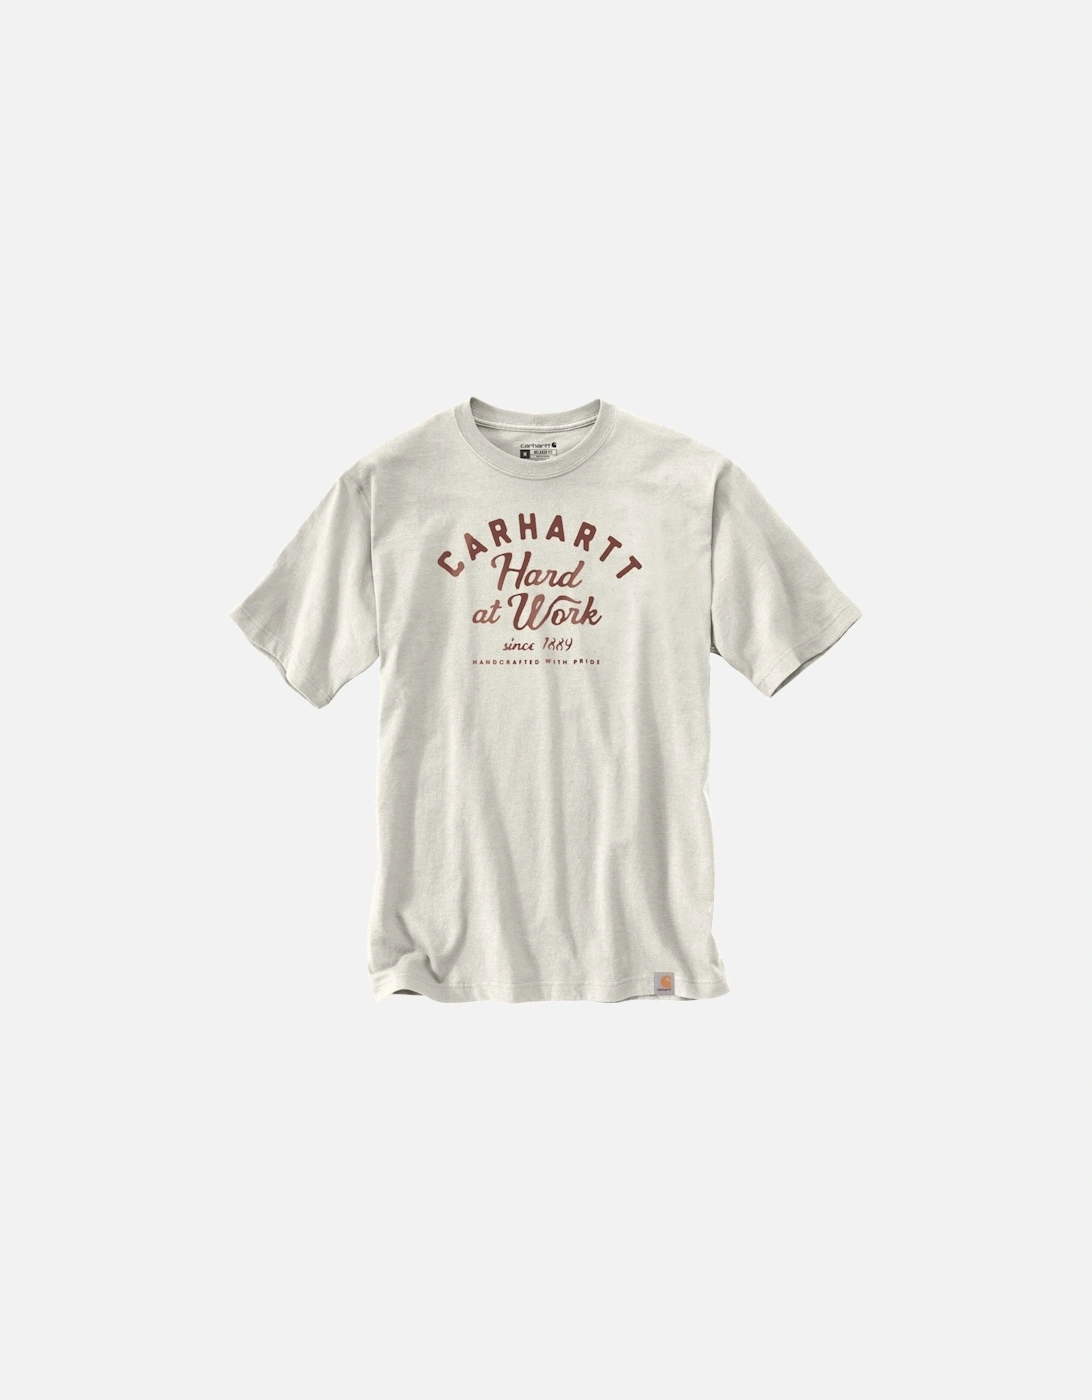 Carhartt Mens Heavyweight Short Sleeve Graphic T Shirt, 2 of 1